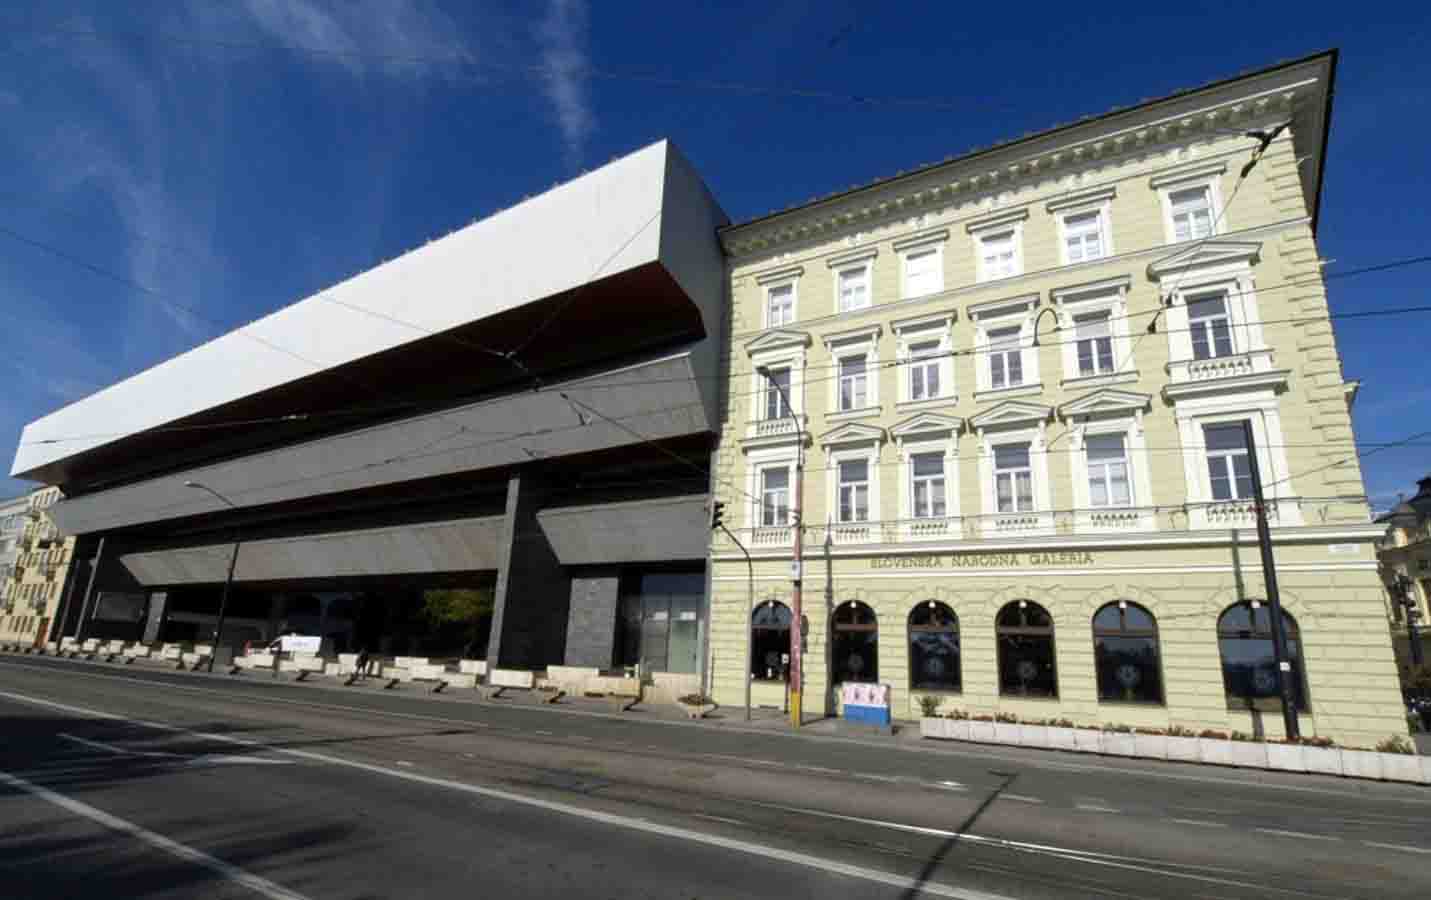 bratislava-slovenska-narodna-galeria